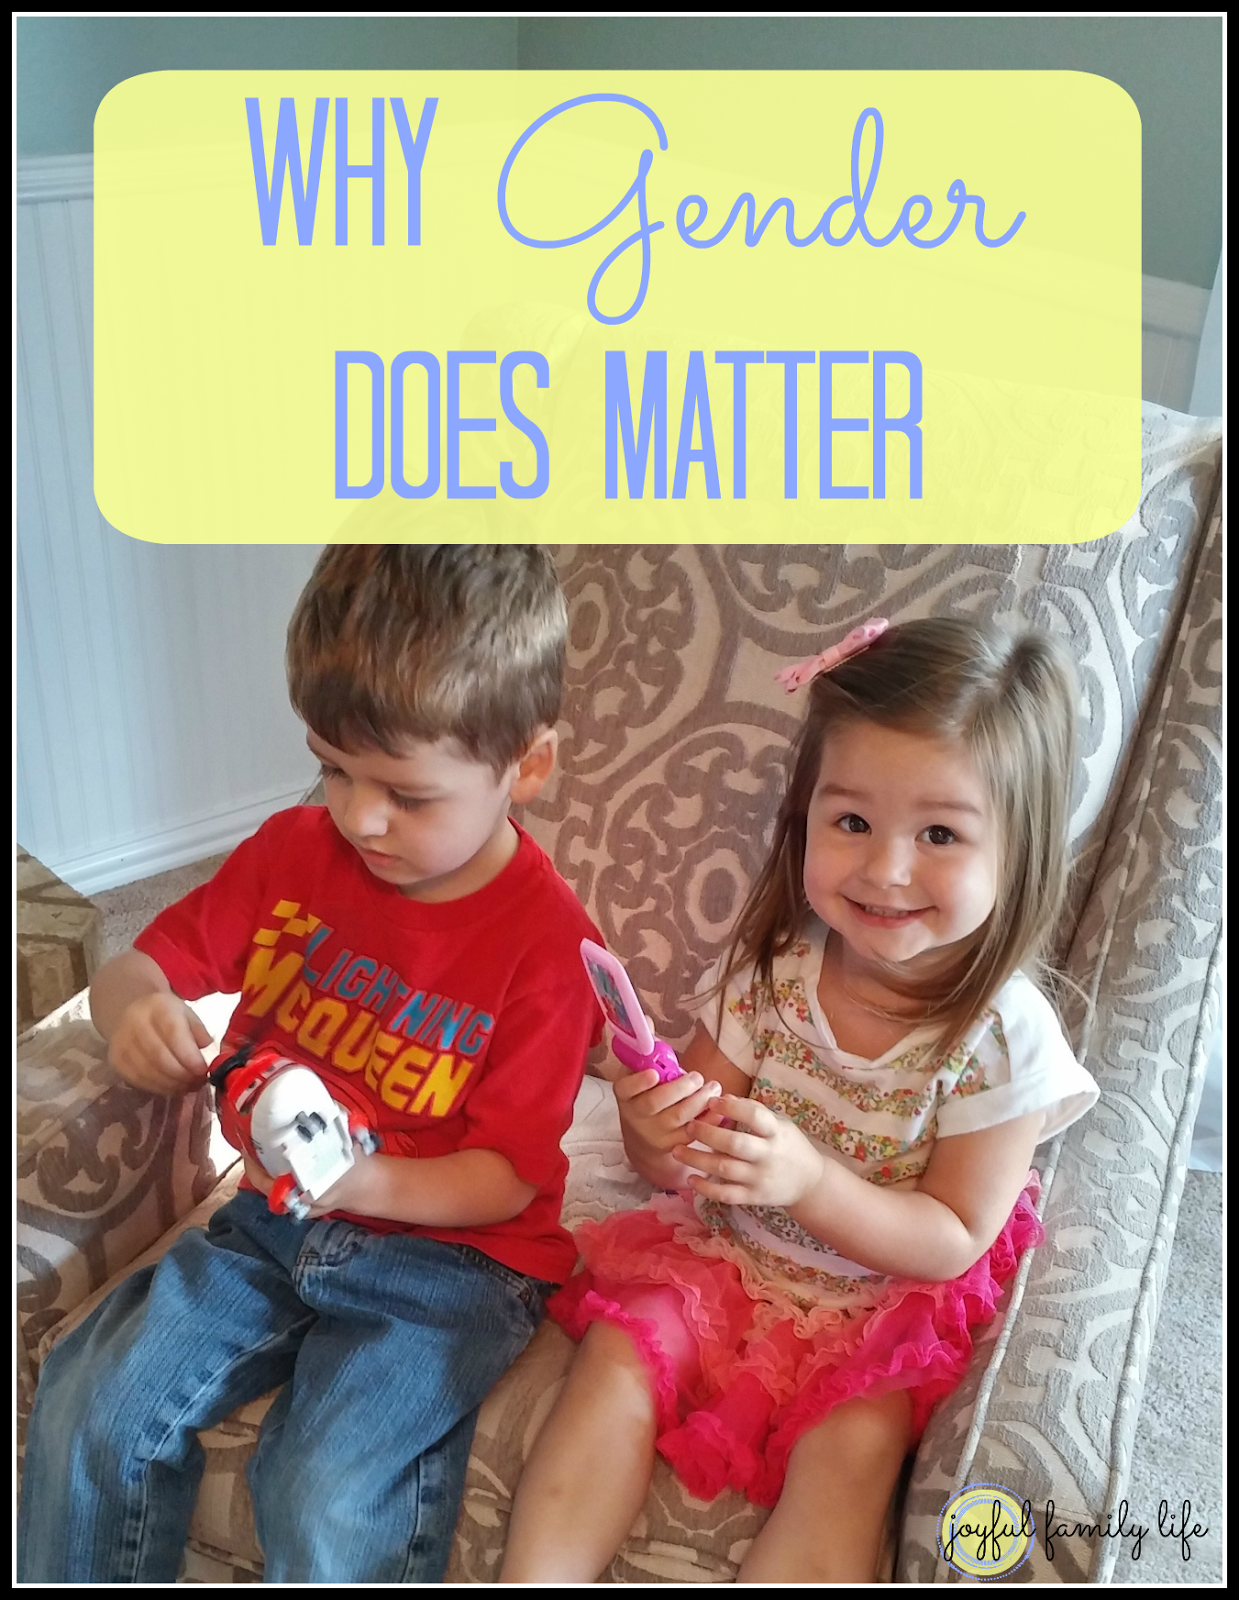 Joyful Family Life: Why Gender Does Matter